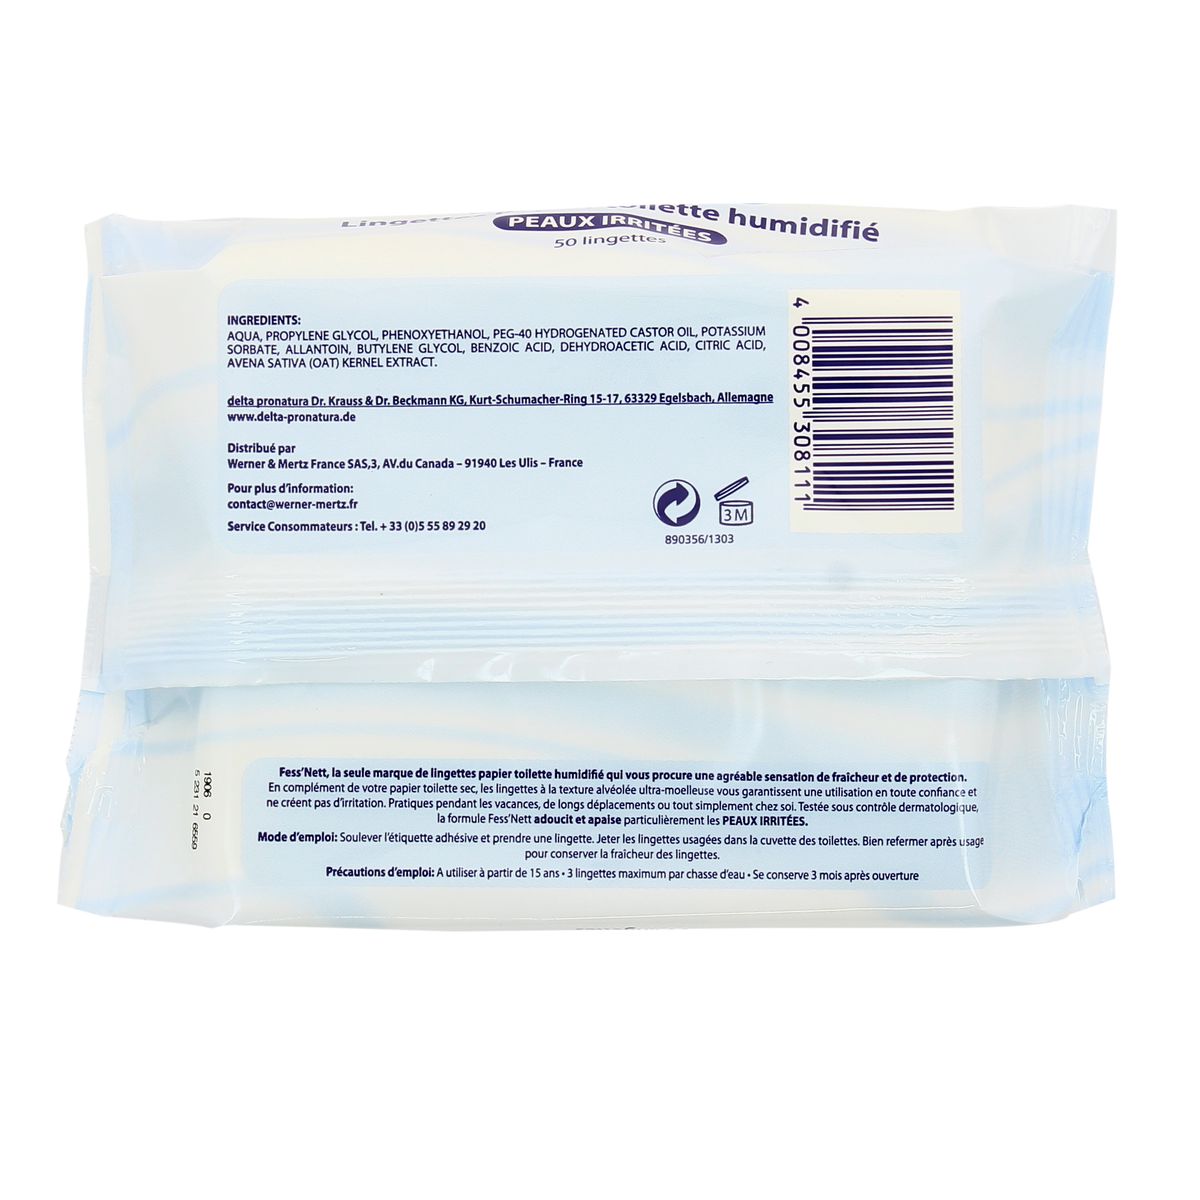 FESS'NETT Papier toilette humide blanc hypoallergénique 50 lingettes pas  cher 